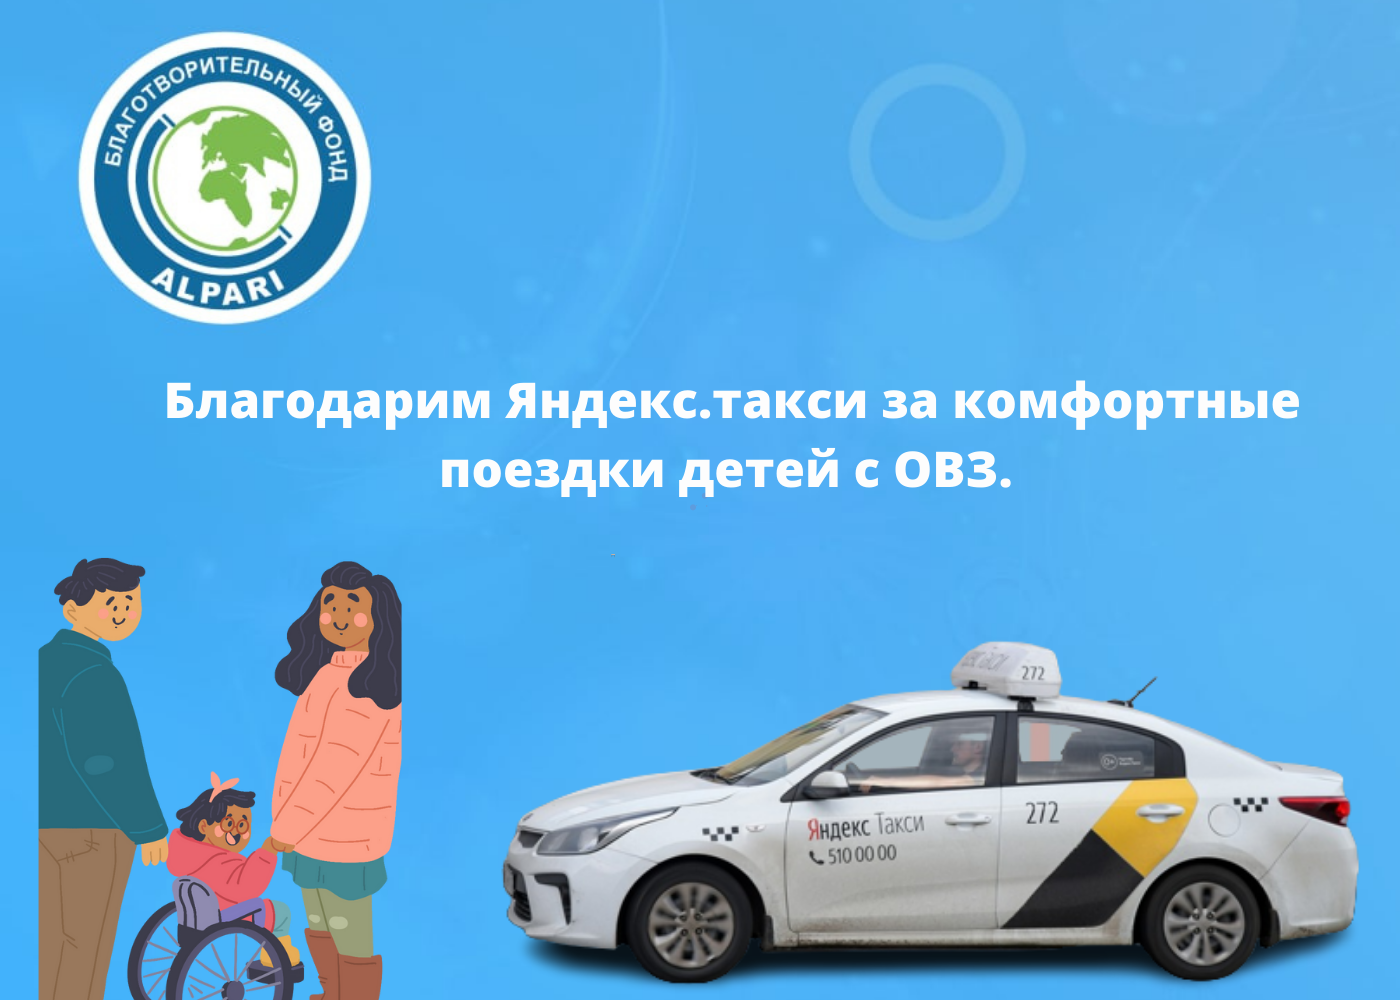 Благодарим Яндекс.такси за комфортные поездки детей с ОВЗ. 